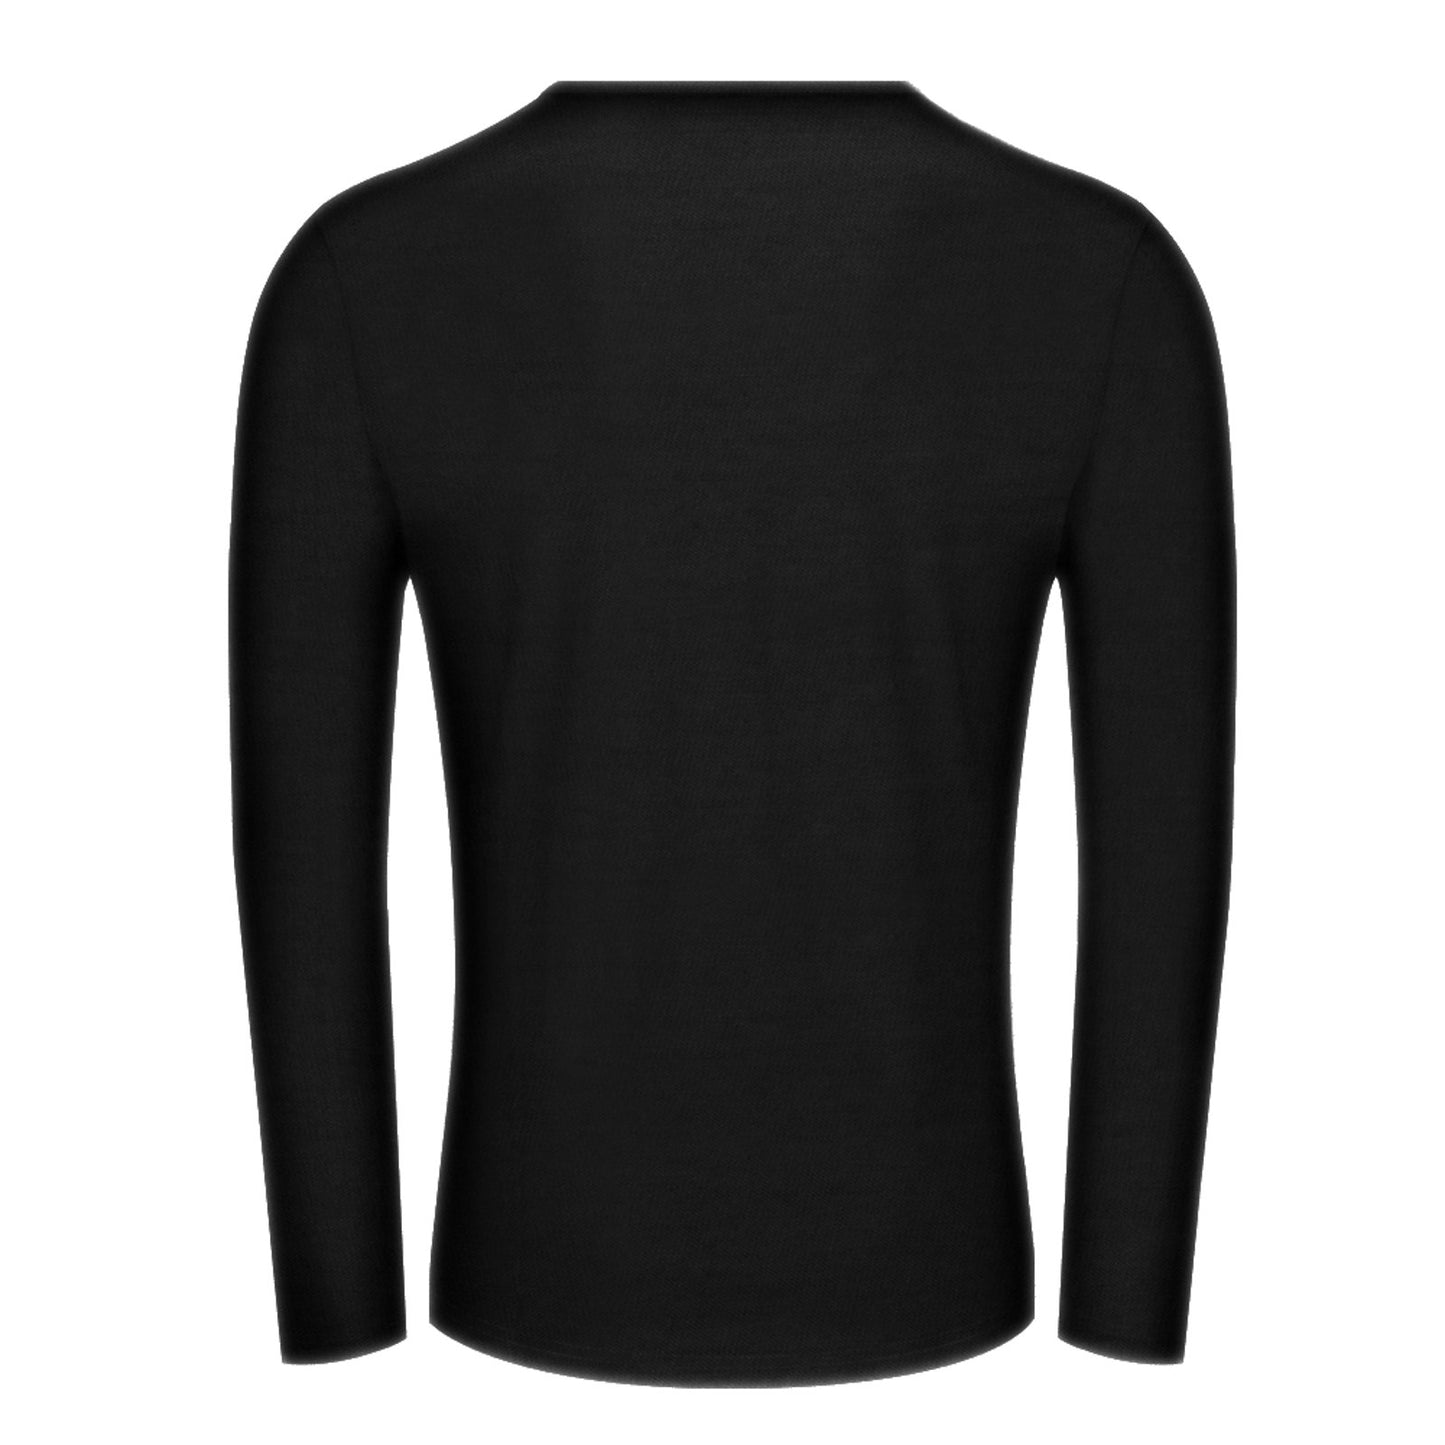 Online Customize T-shirt for Men Men's CrewNeck Long Sleeve T-shirt Basketball Player